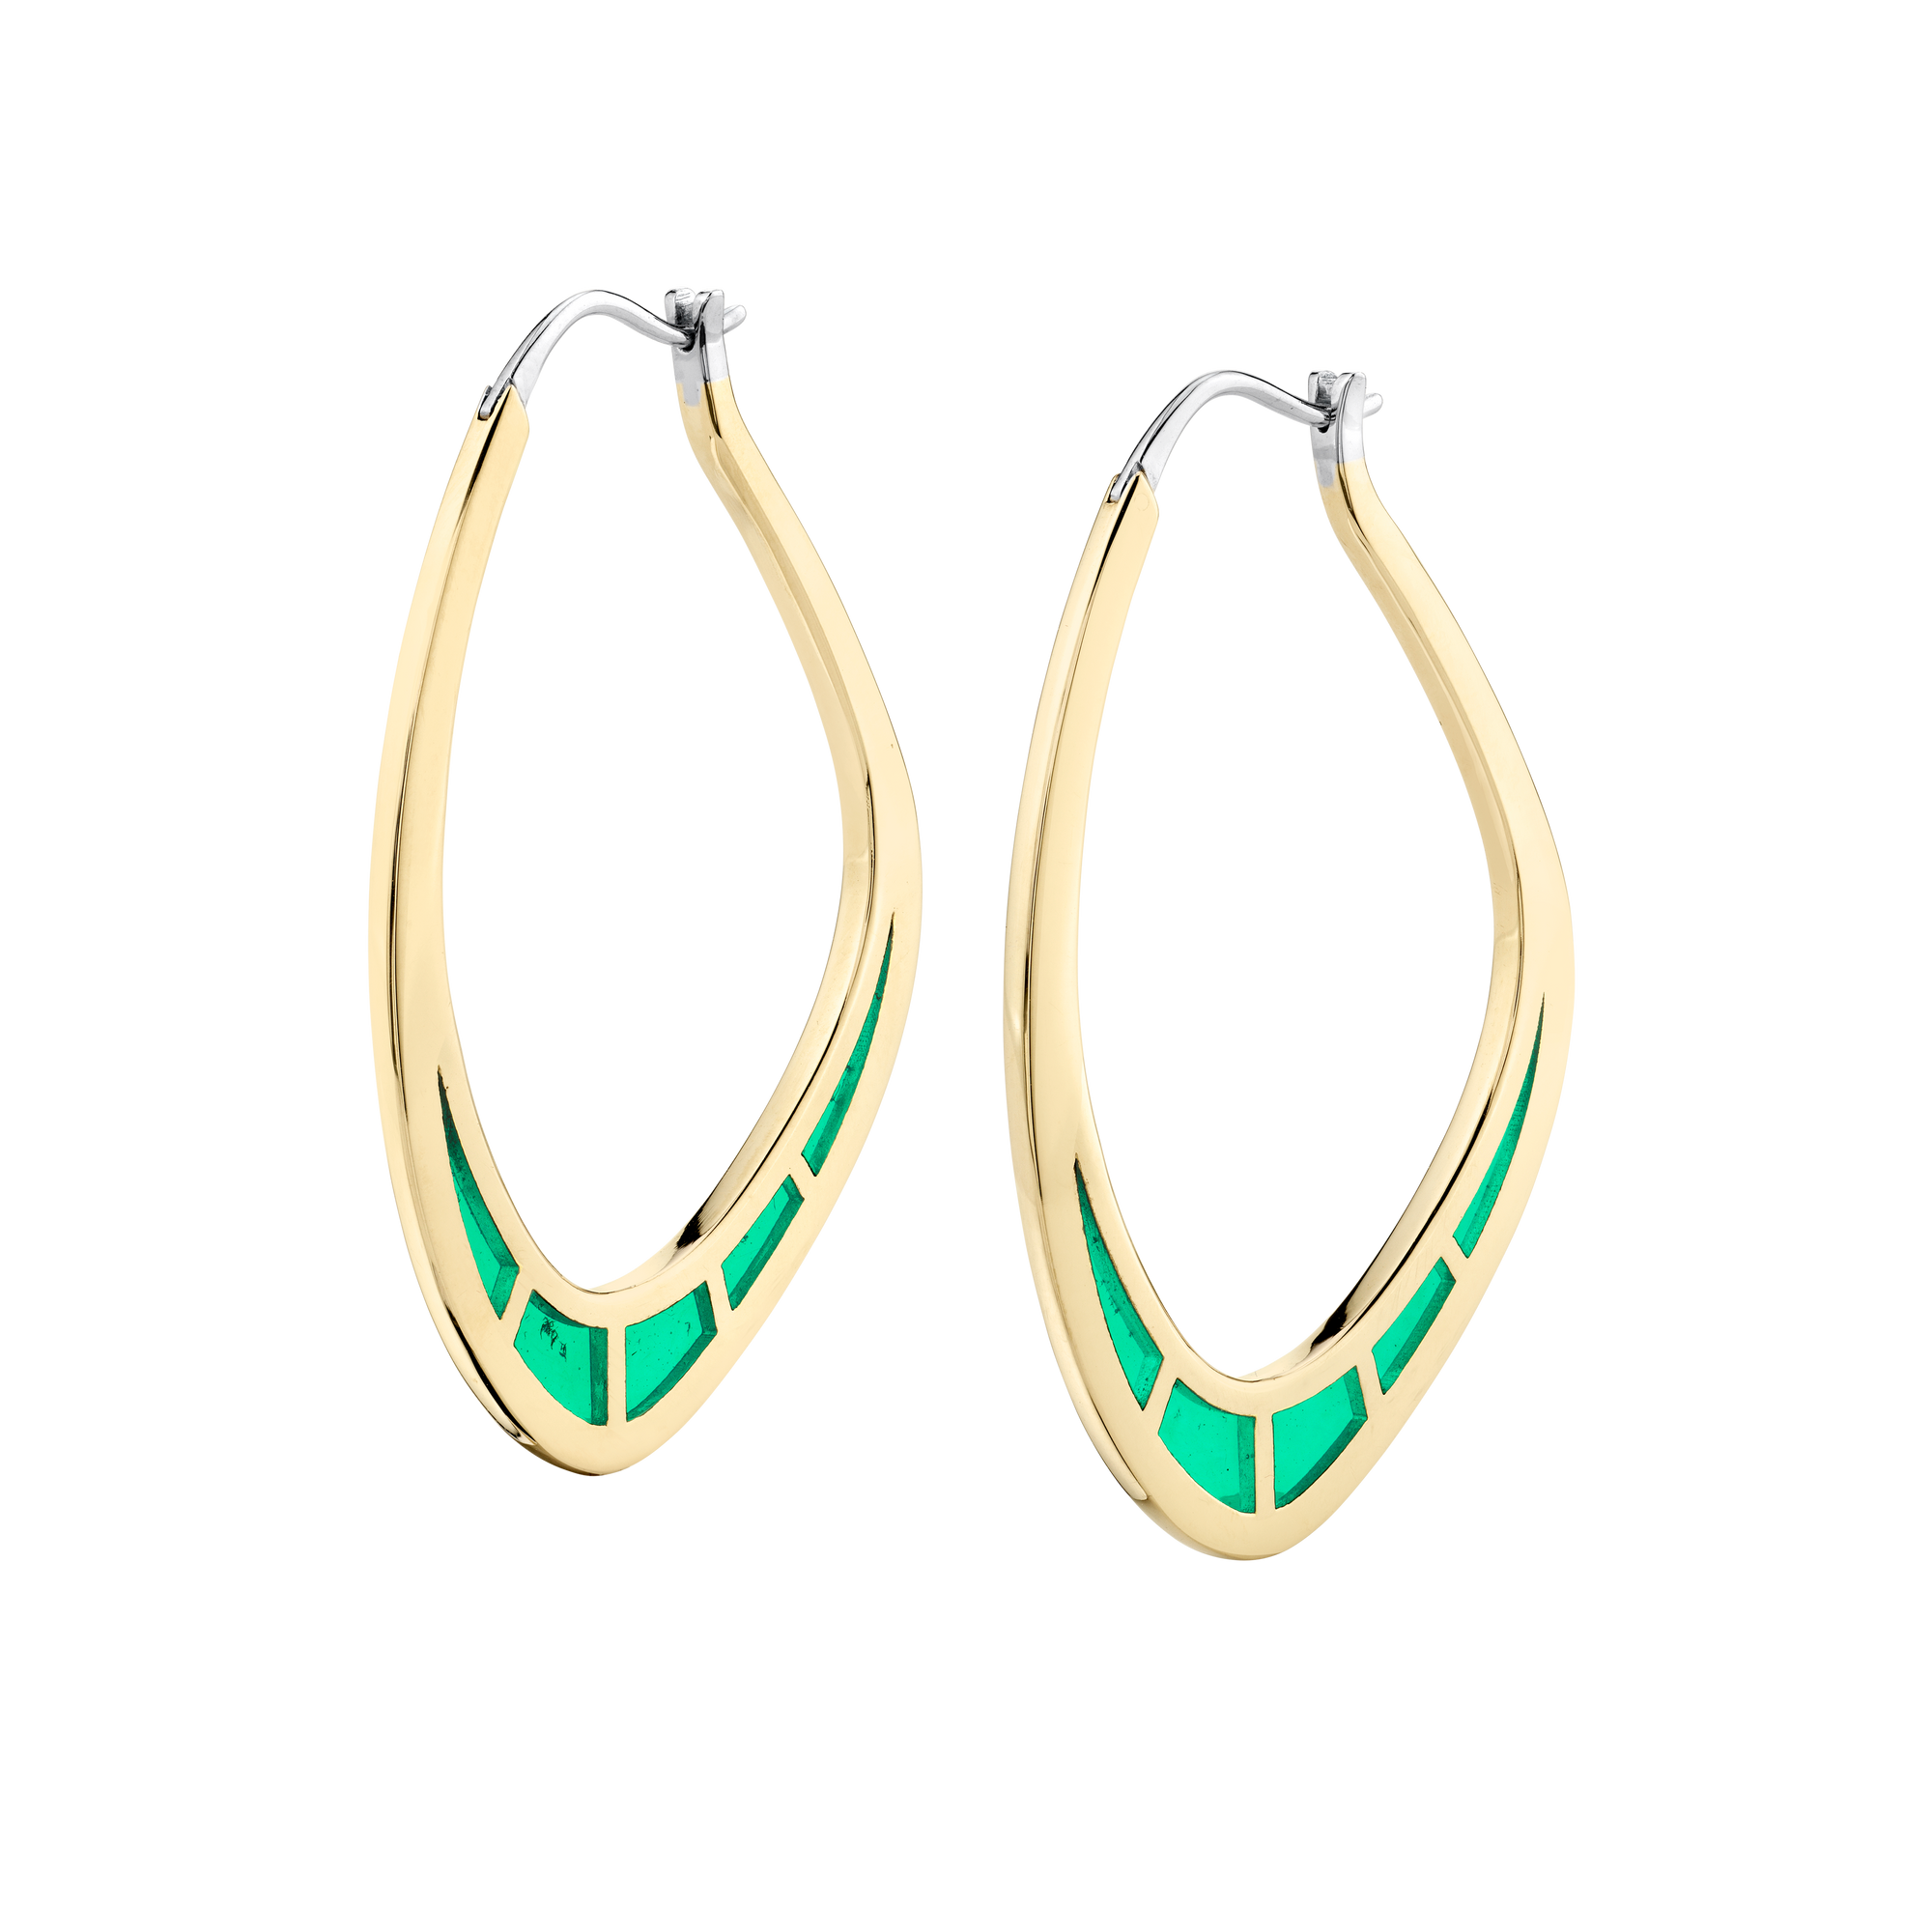 Cica Earrings with Green Enamel